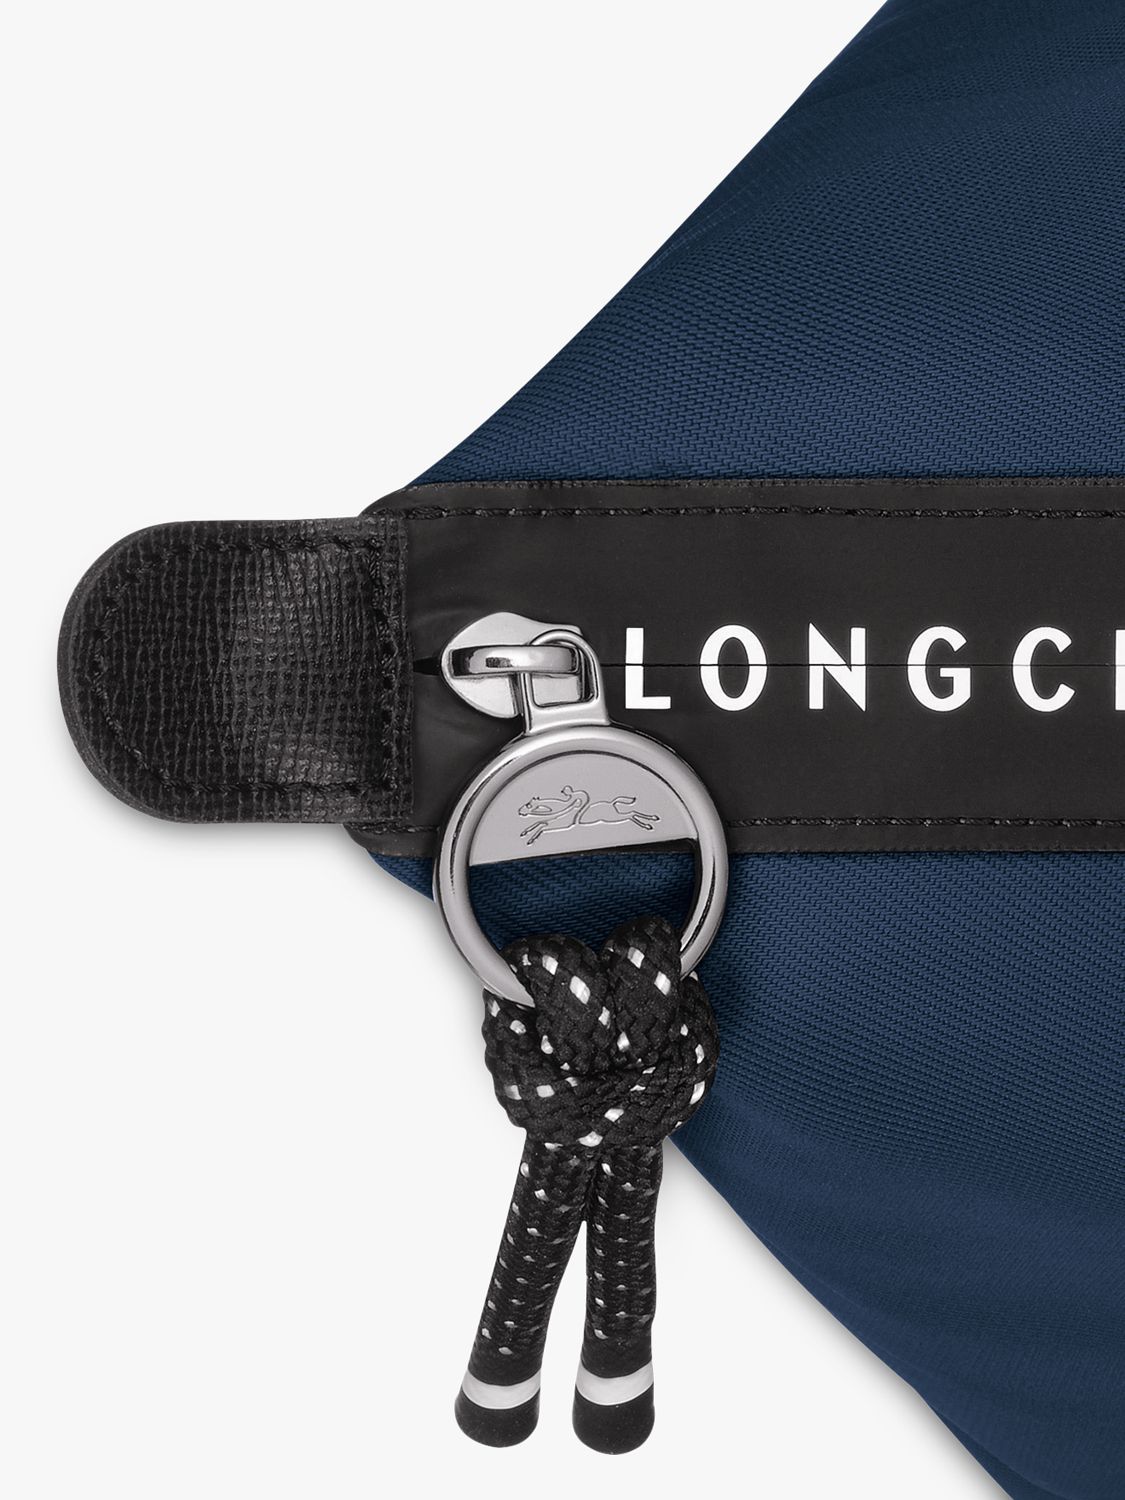 Longchamp Le Pliage Original Pouch, Paper at John Lewis & Partners